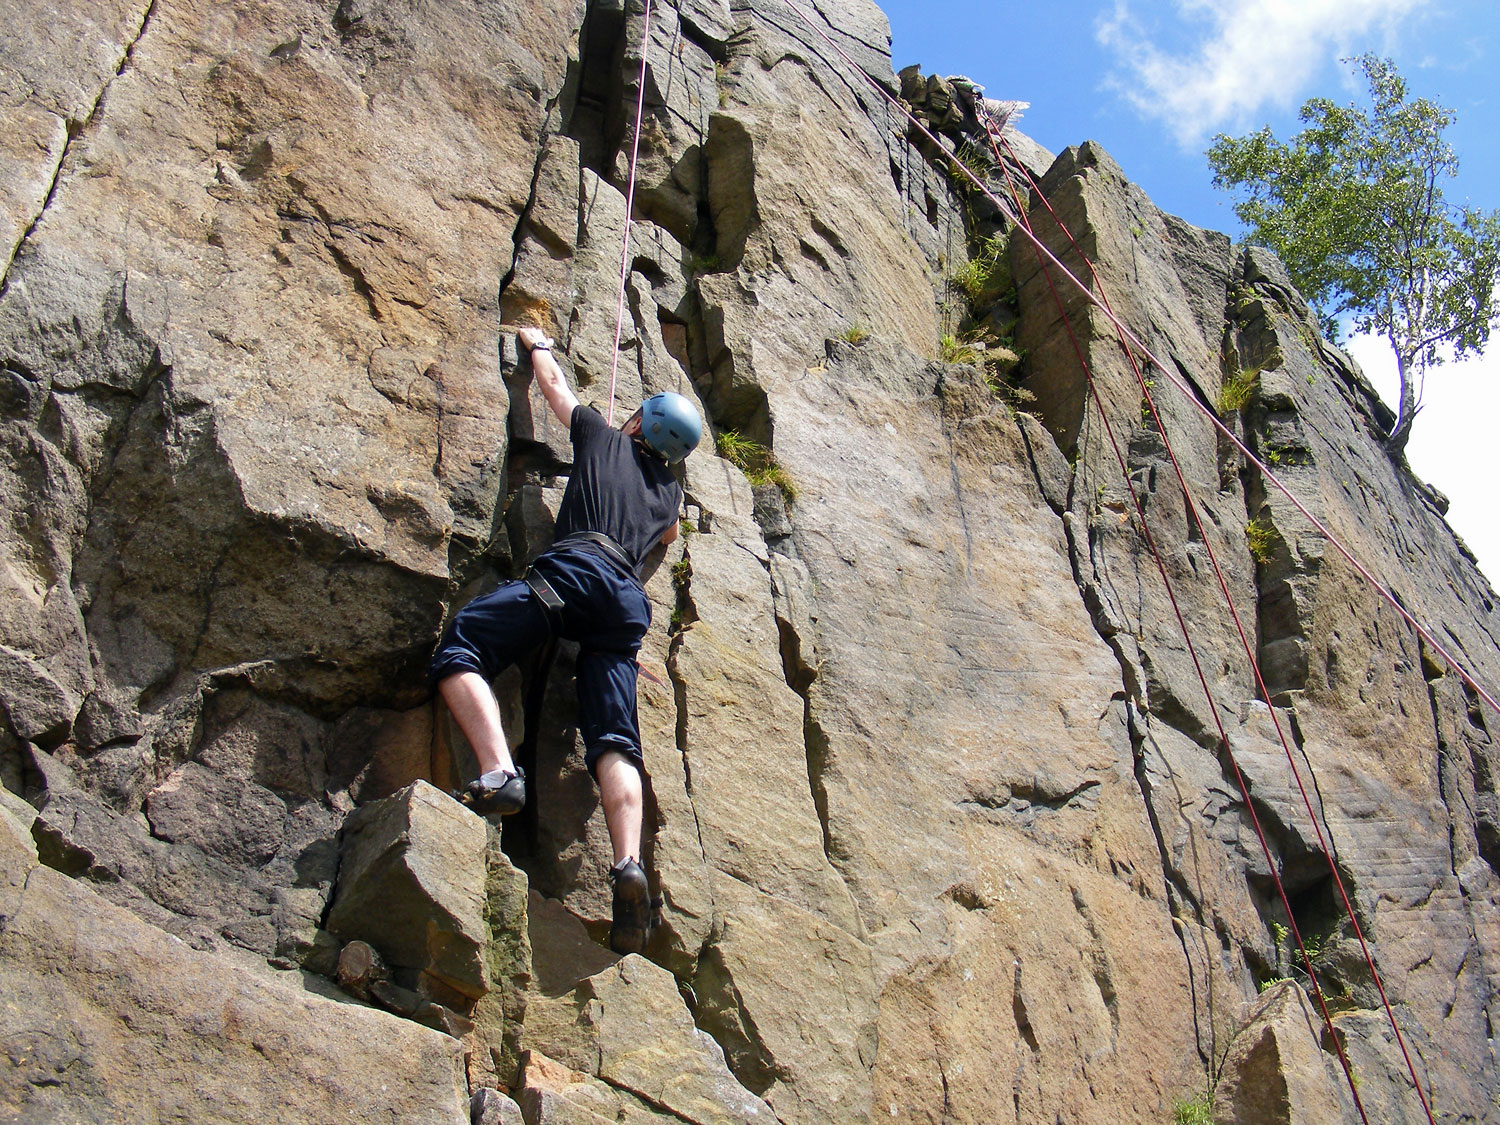 A person rock climbing